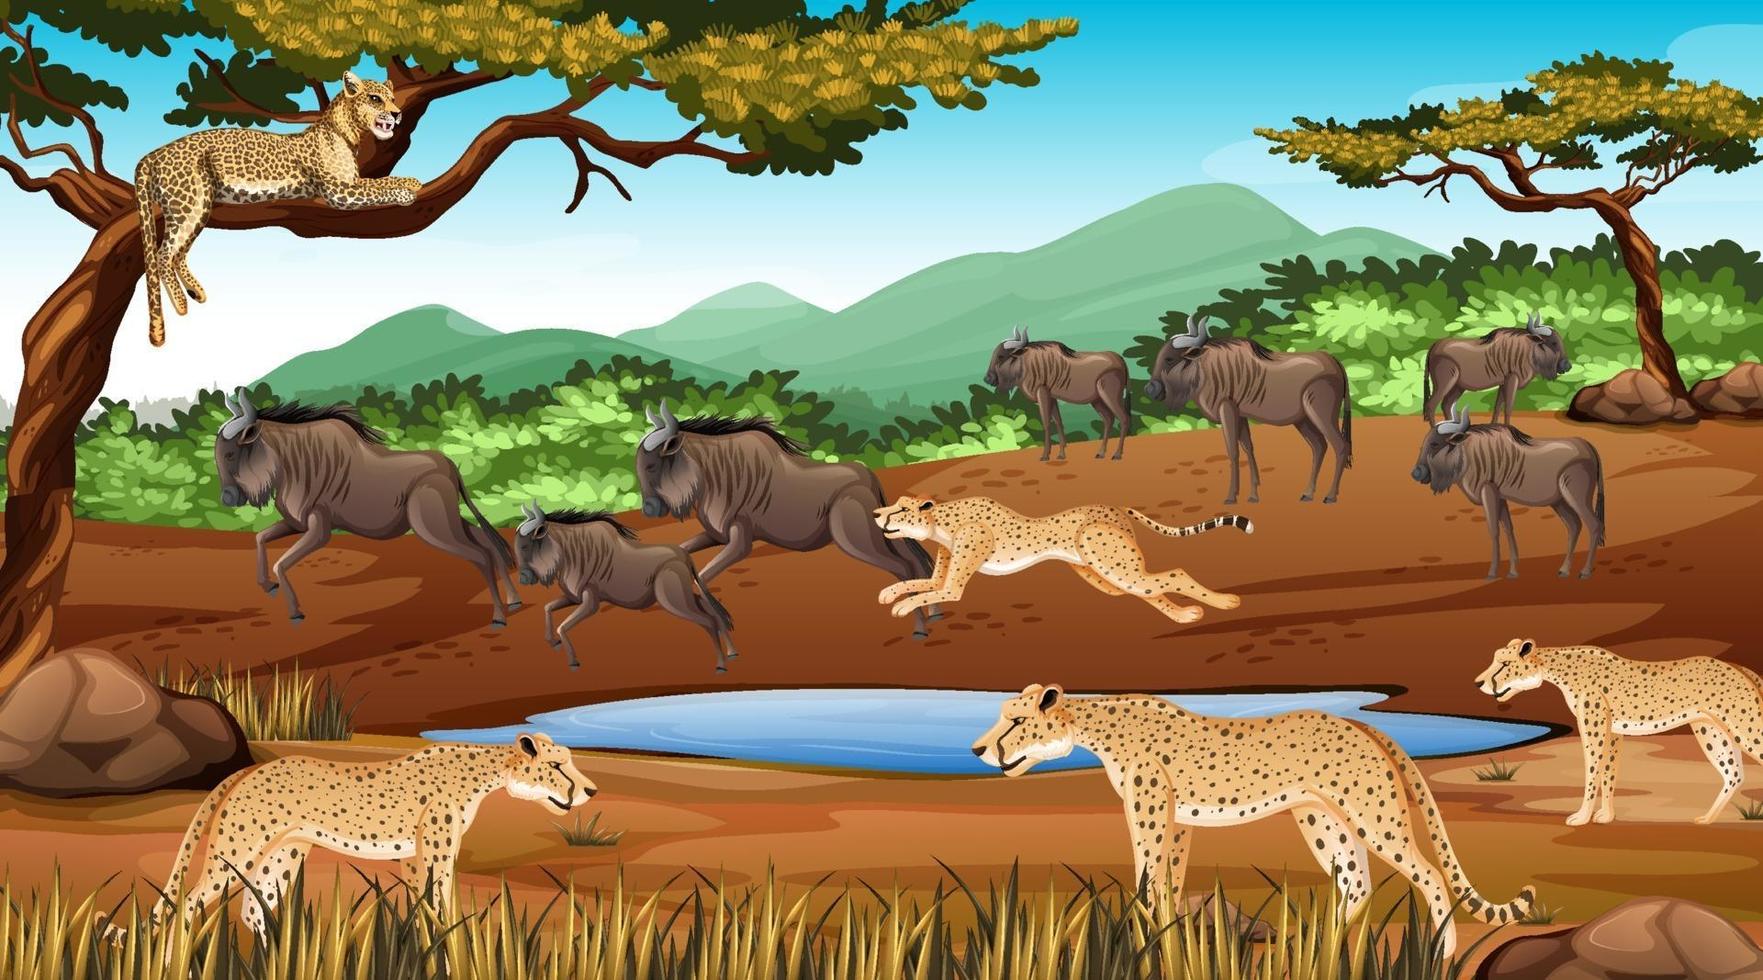 Gruppe von wilden afrikanischen Tieren in der Waldszene vektor